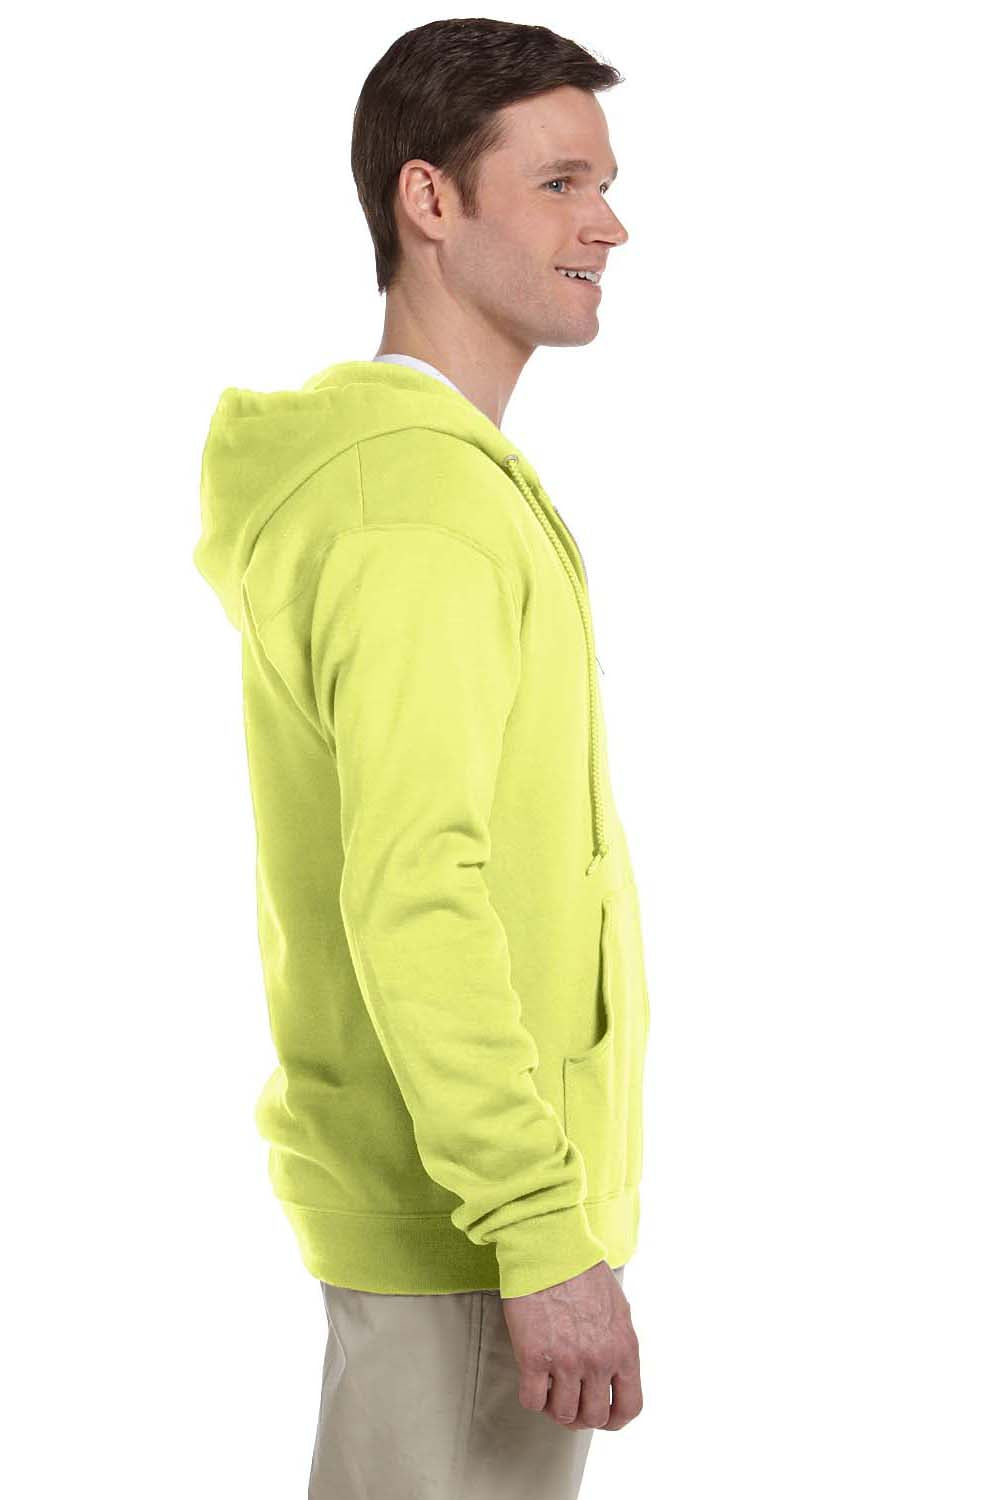 Jerzees 993 Mens NuBlend Fleece Full Zip Hooded Sweatshirt Hoodie Safety Green Side